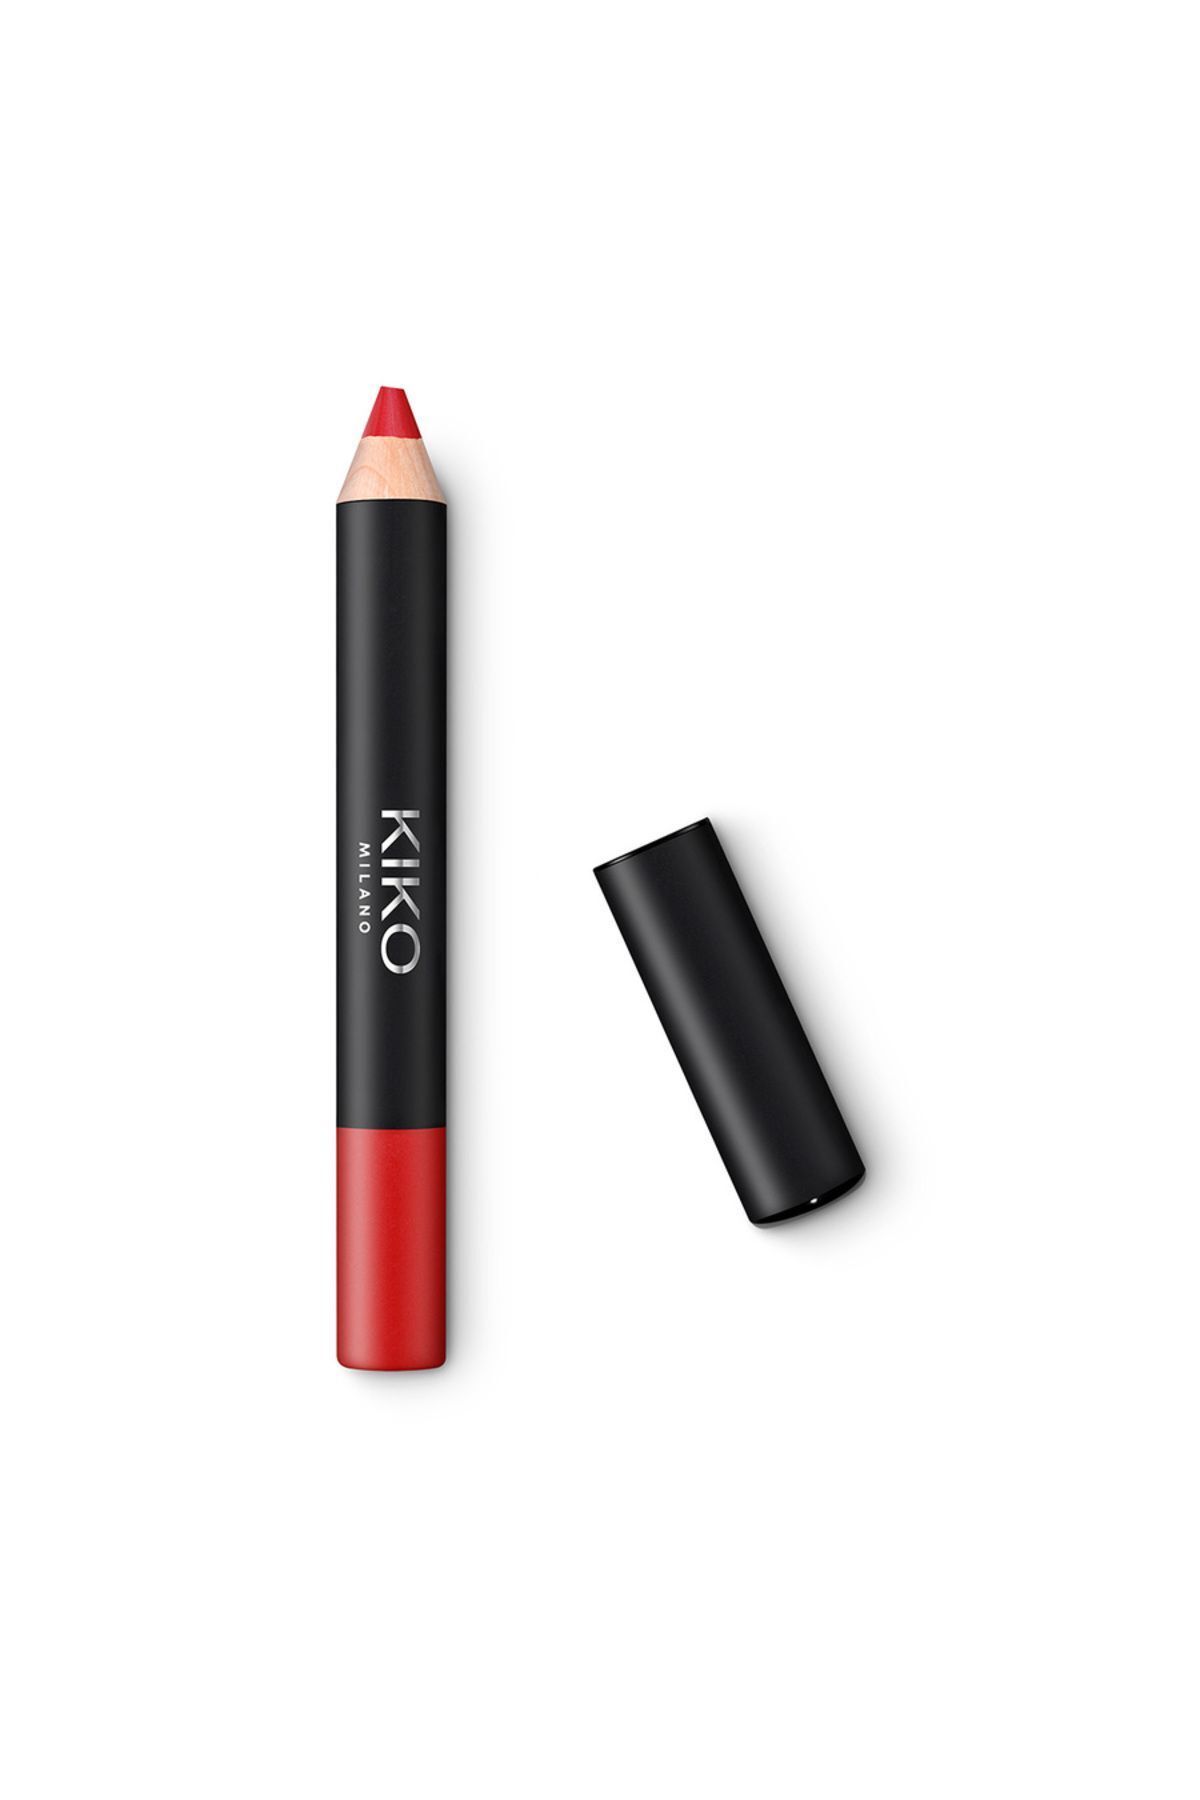 KIKO DUDAK PARLATICISI - Smart Fusion Matte Lip Crayon - 05 Strawberry Red